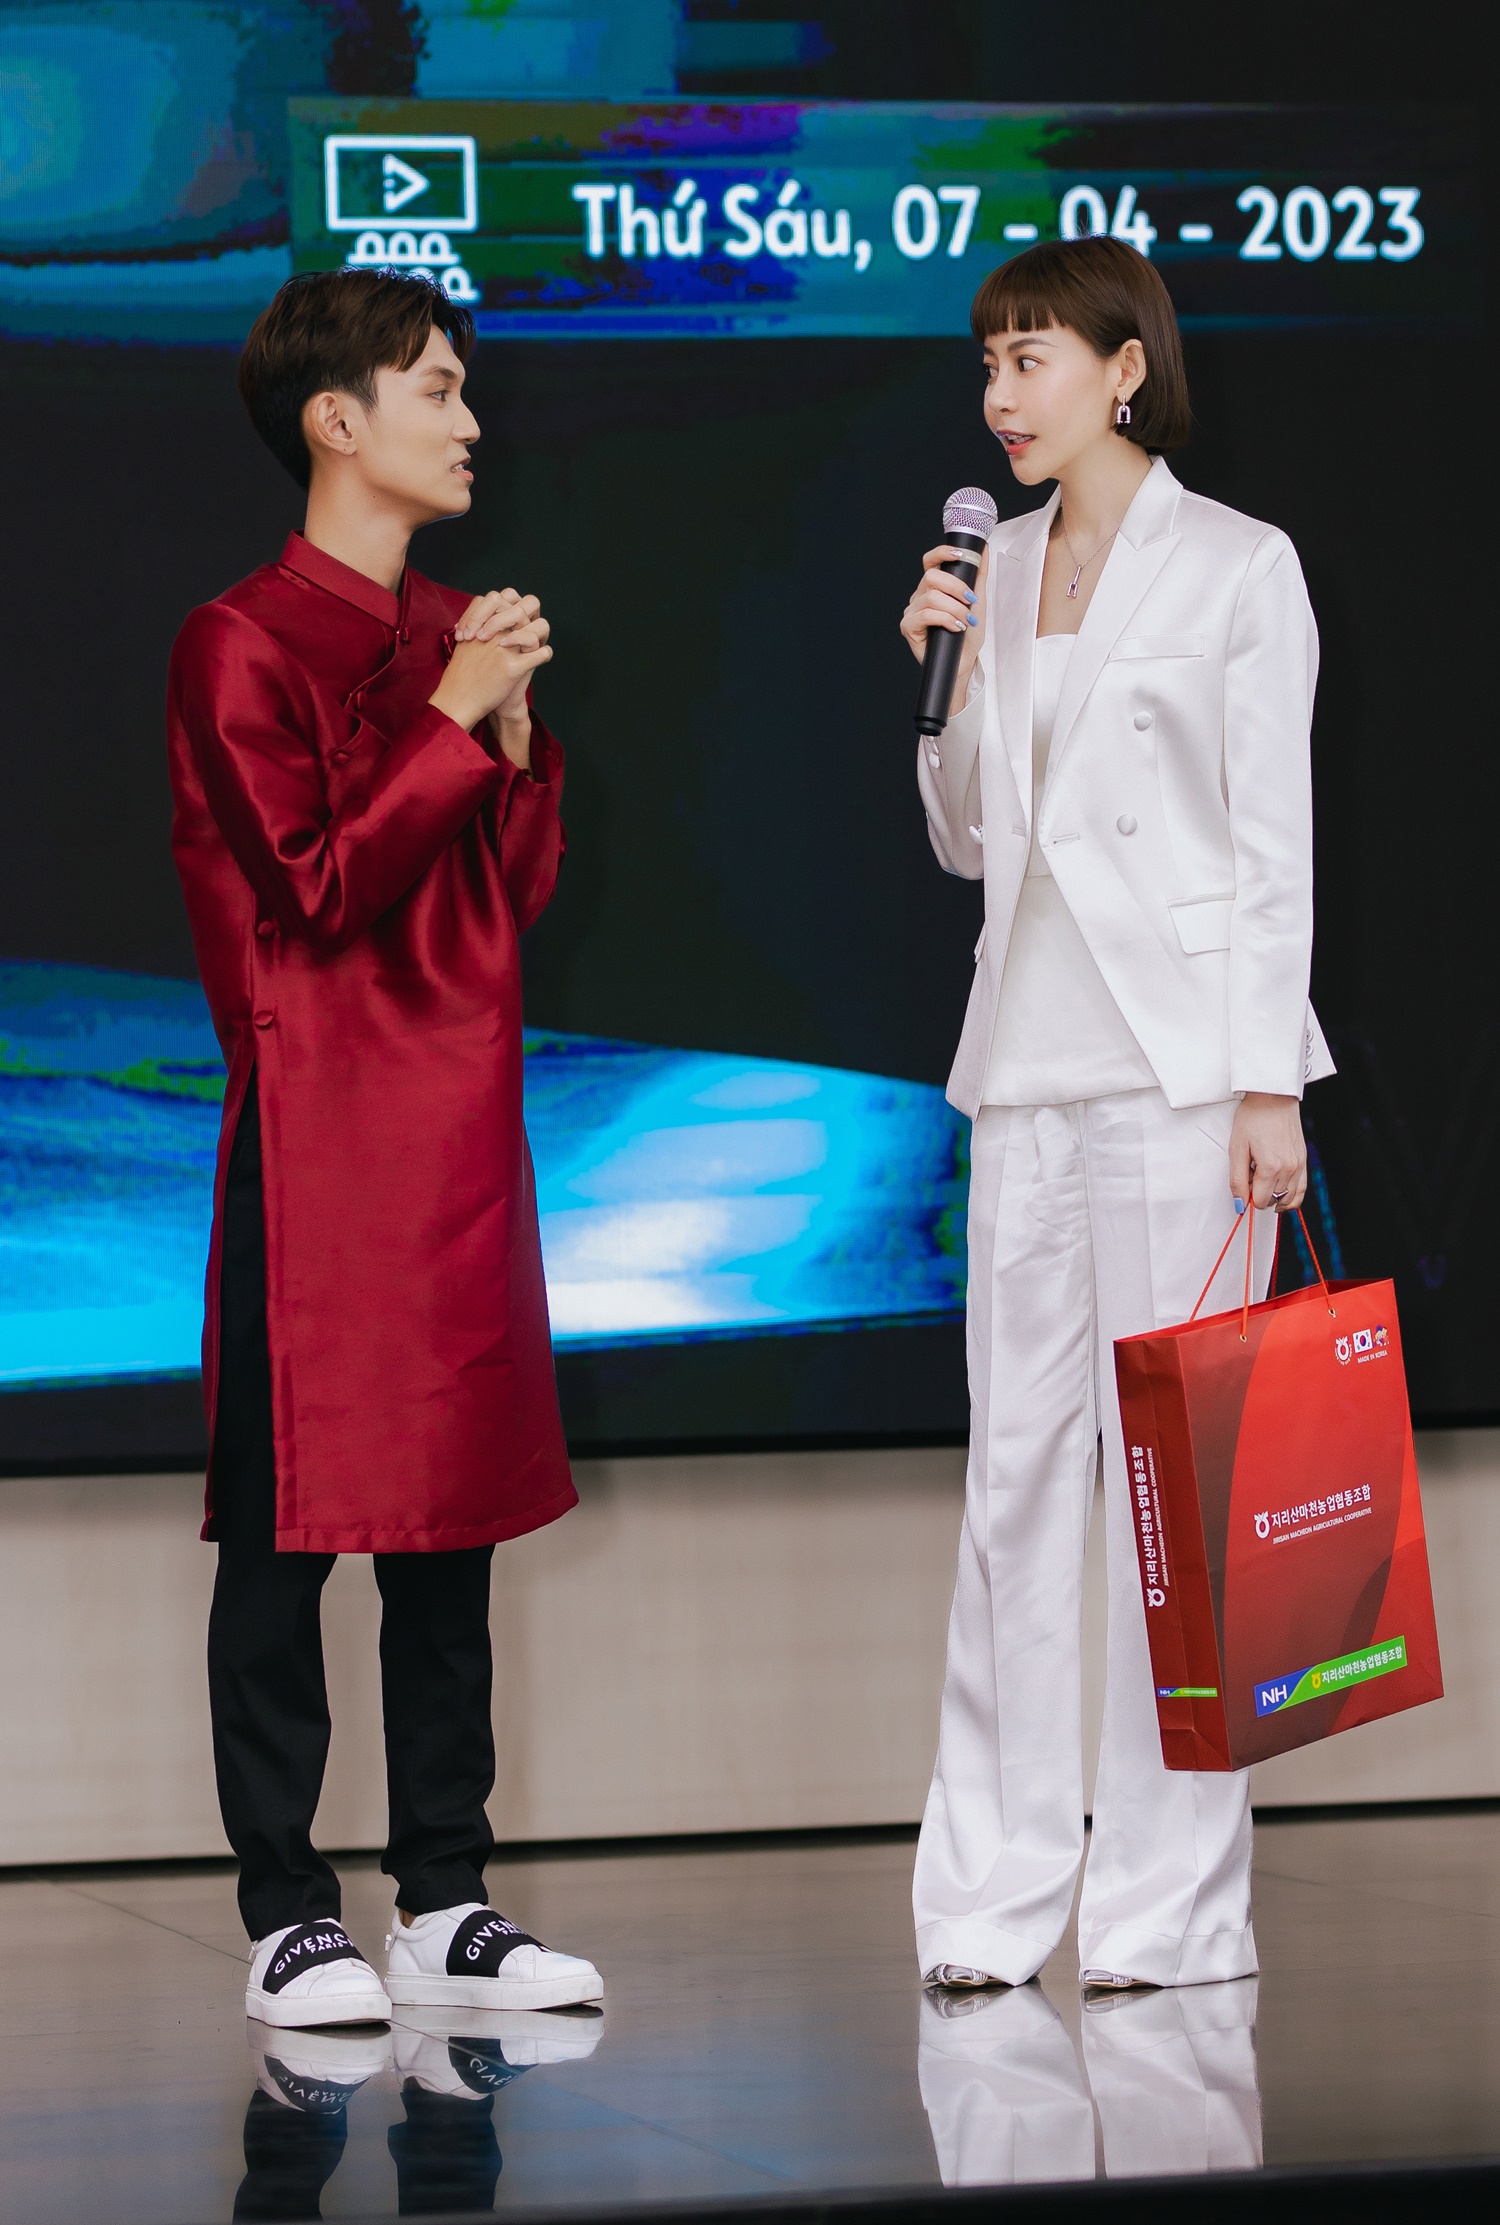 Hoa hậu Hải Dương làm khách mời truyền cảm hứng, chia sẻ trước hàng trăm sinh viên - ảnh 2